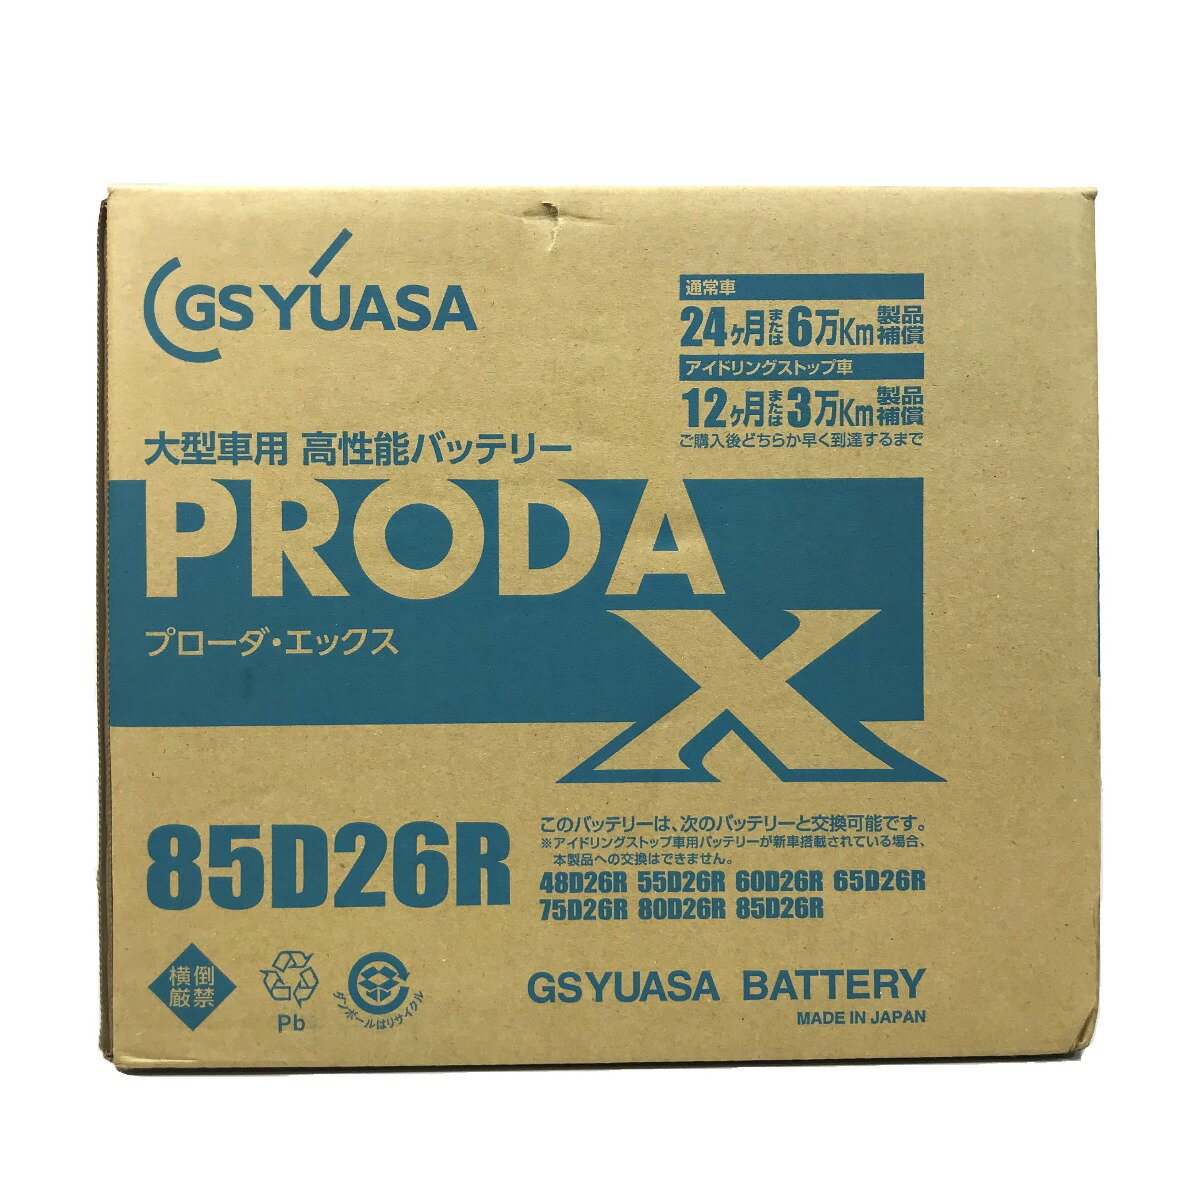 ##【中古】GSYUASA 大型車用 高性能カーバッテリー PRODA X PRX-85D26R Sランク